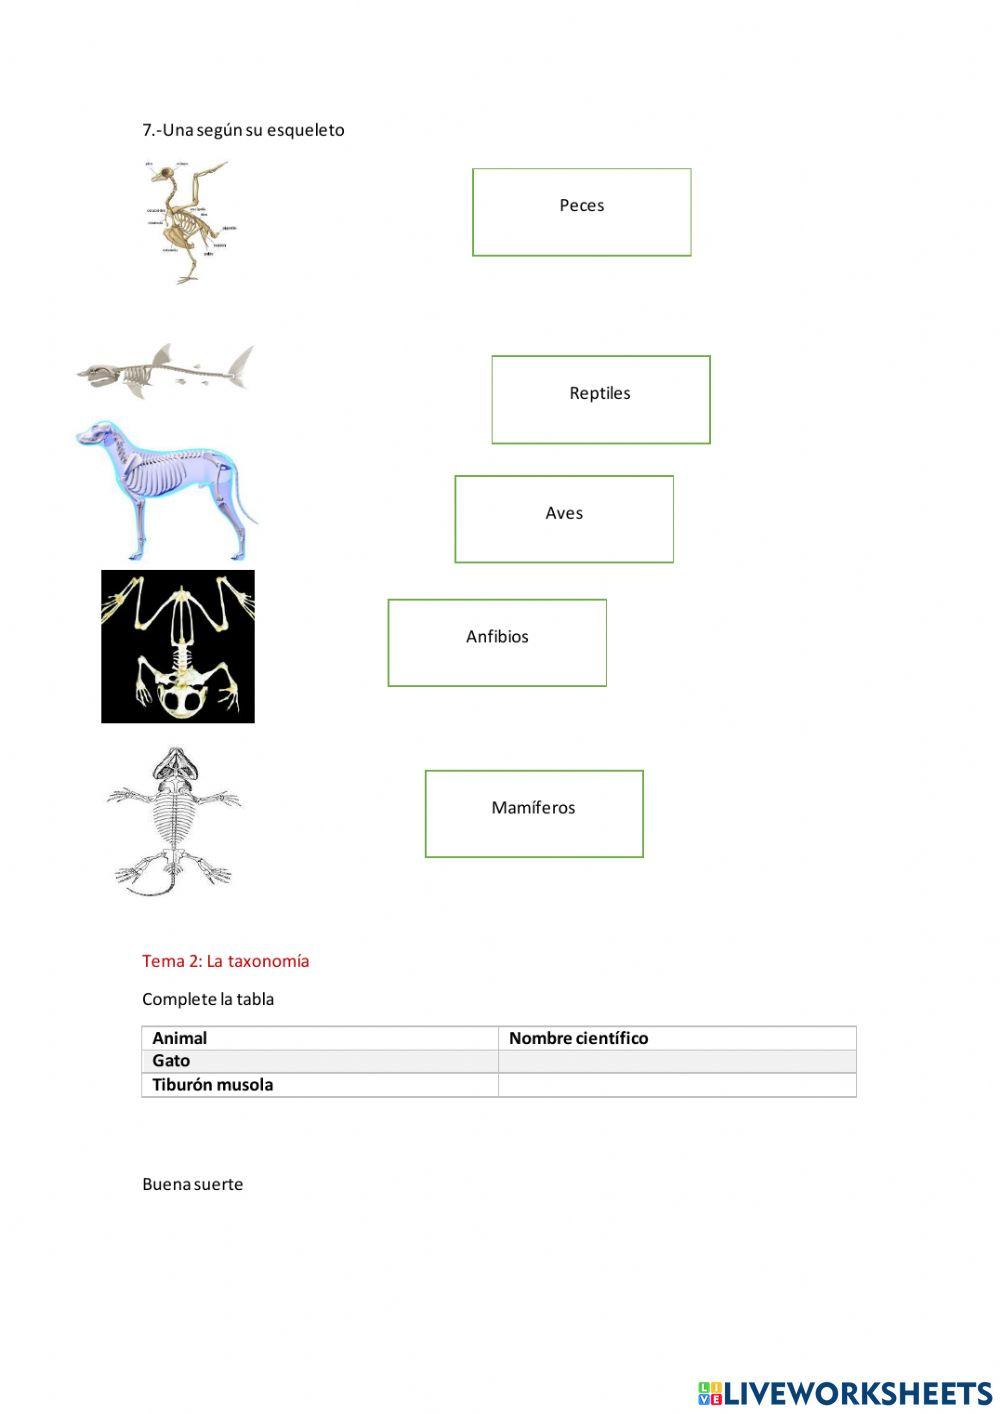 Los animales vertebrados e invertebrados y su taxonomia